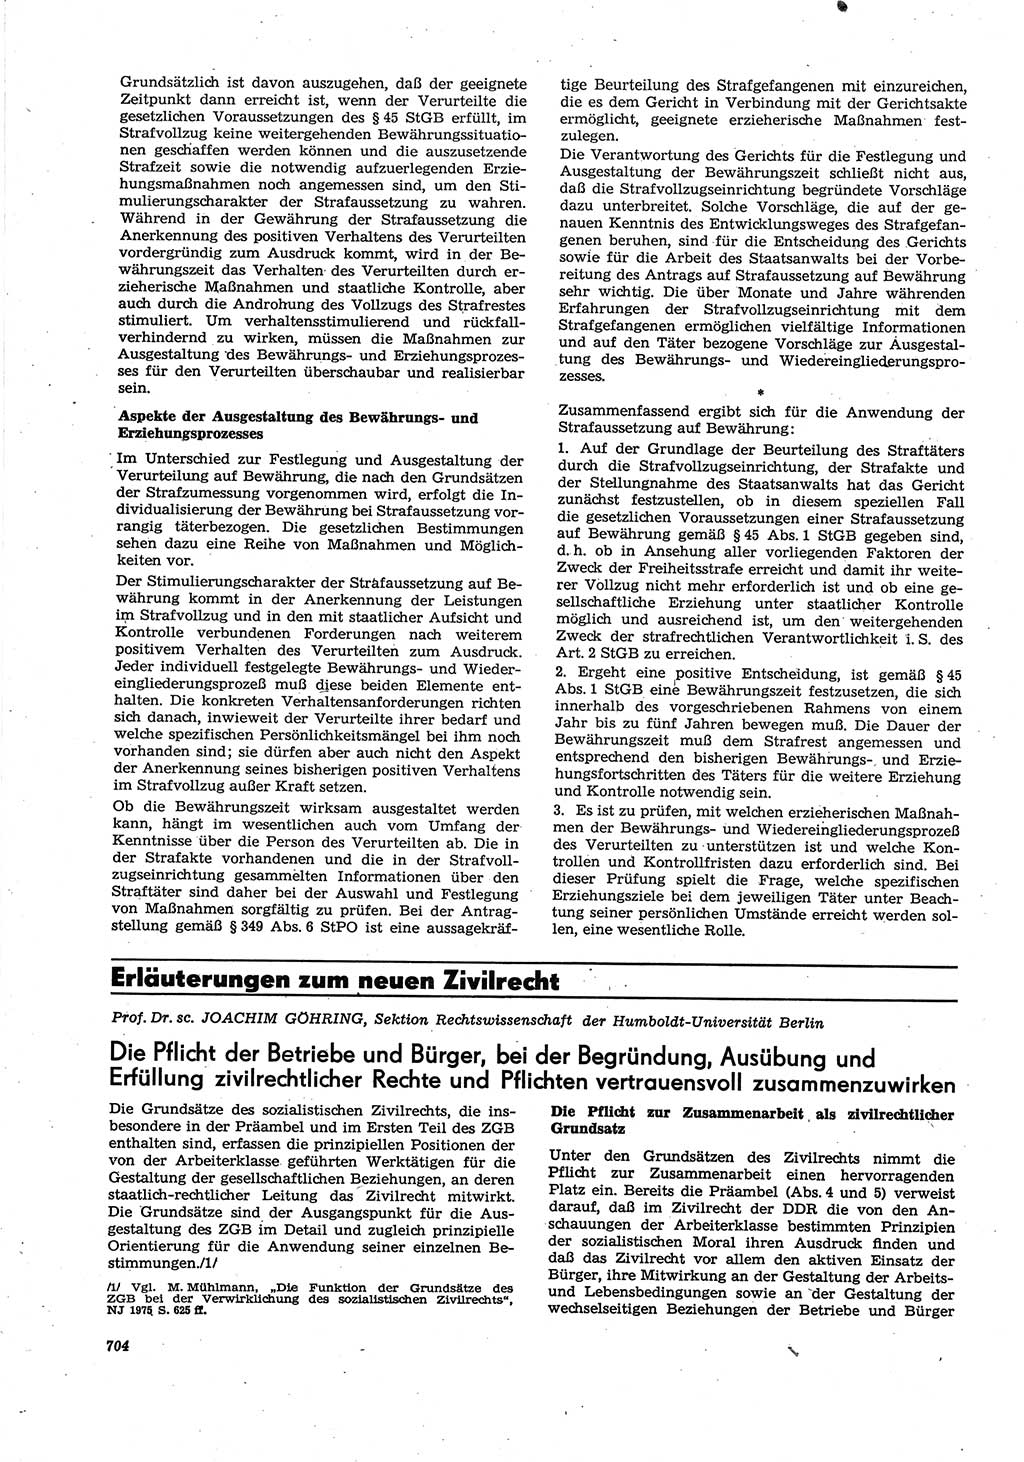 Neue Justiz (NJ), Zeitschrift für Recht und Rechtswissenschaft [Deutsche Demokratische Republik (DDR)], 30. Jahrgang 1976, Seite 704 (NJ DDR 1976, S. 704)